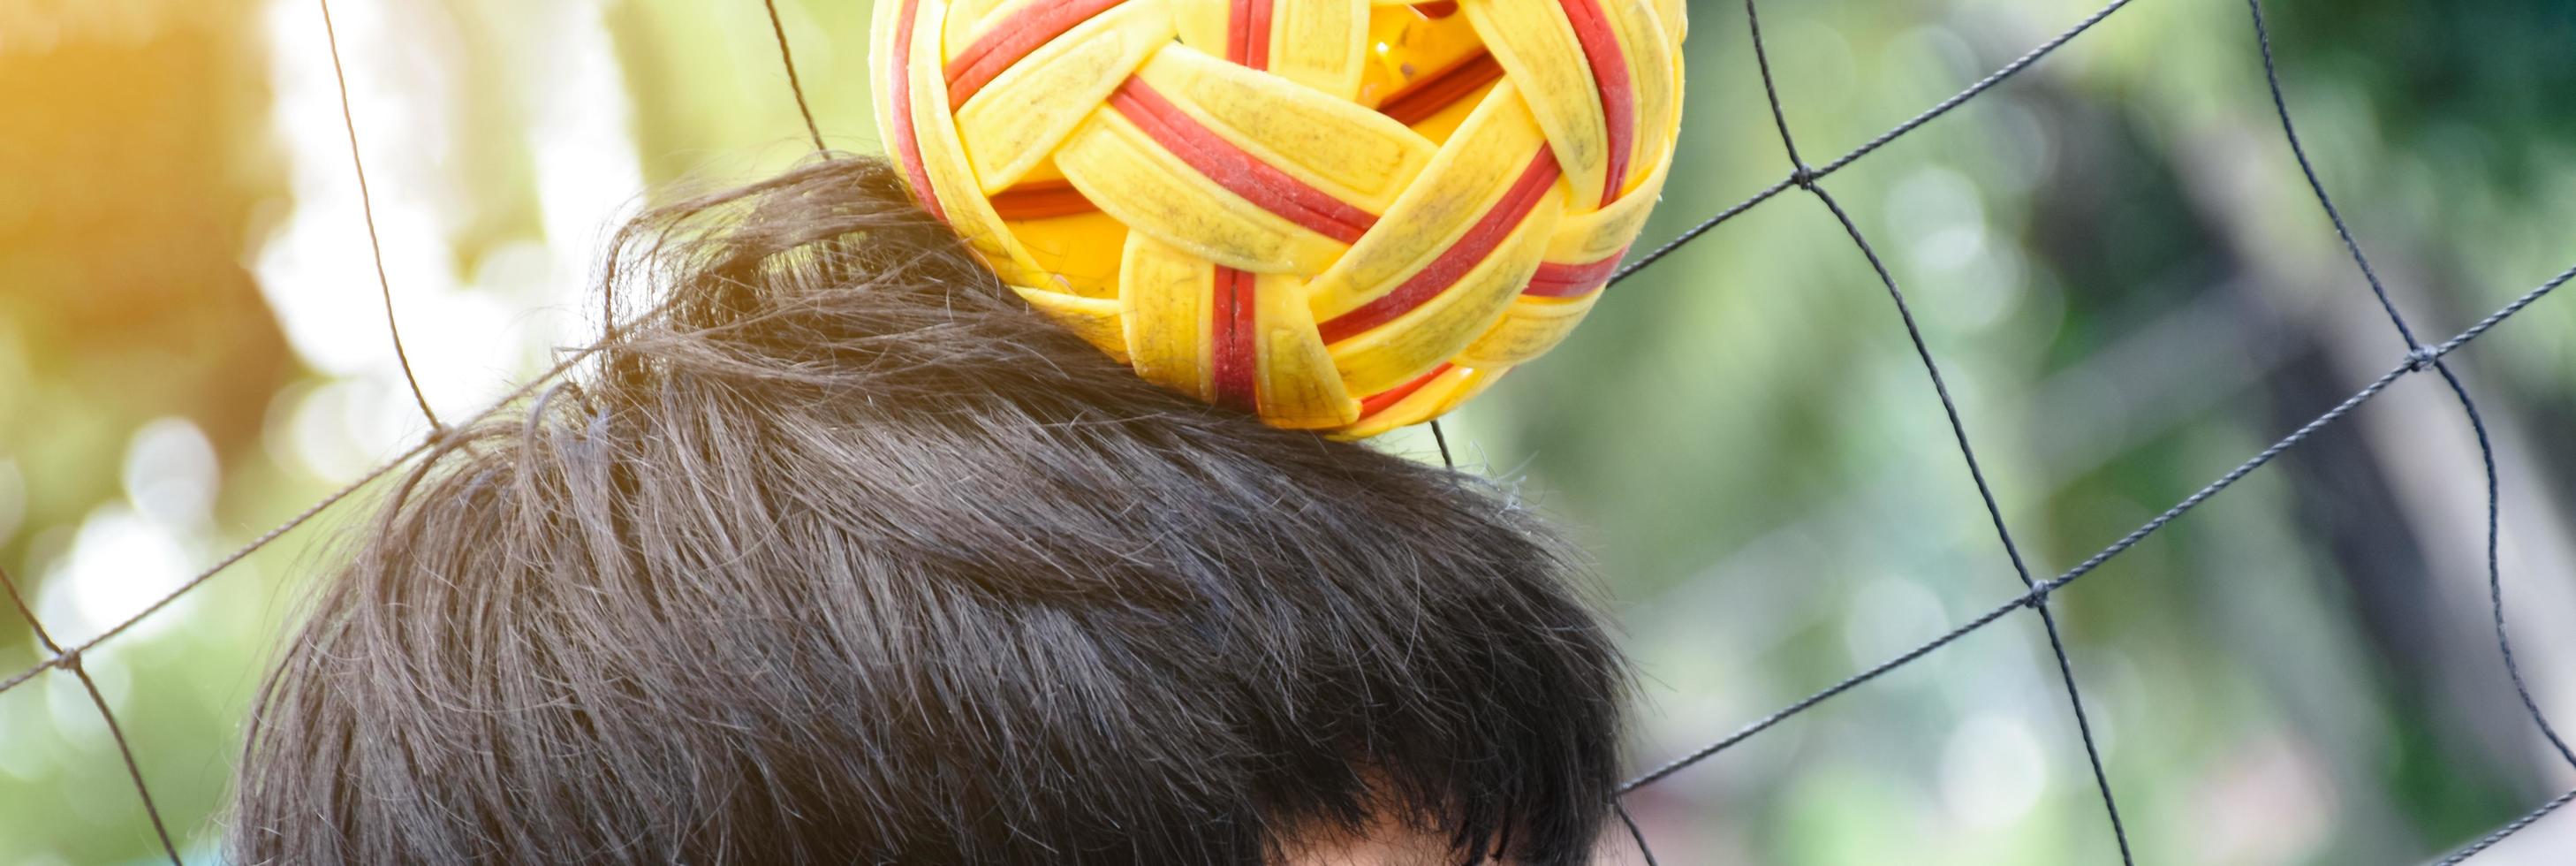 giovane sud-est asiatico maschio sepak takraw giocatore utilizzando il suo giusto mano per hold palla su il suo testa, all'aperto sepak takraw giocando dopo scuola, morbido e selettivo messa a fuoco su sfera. foto